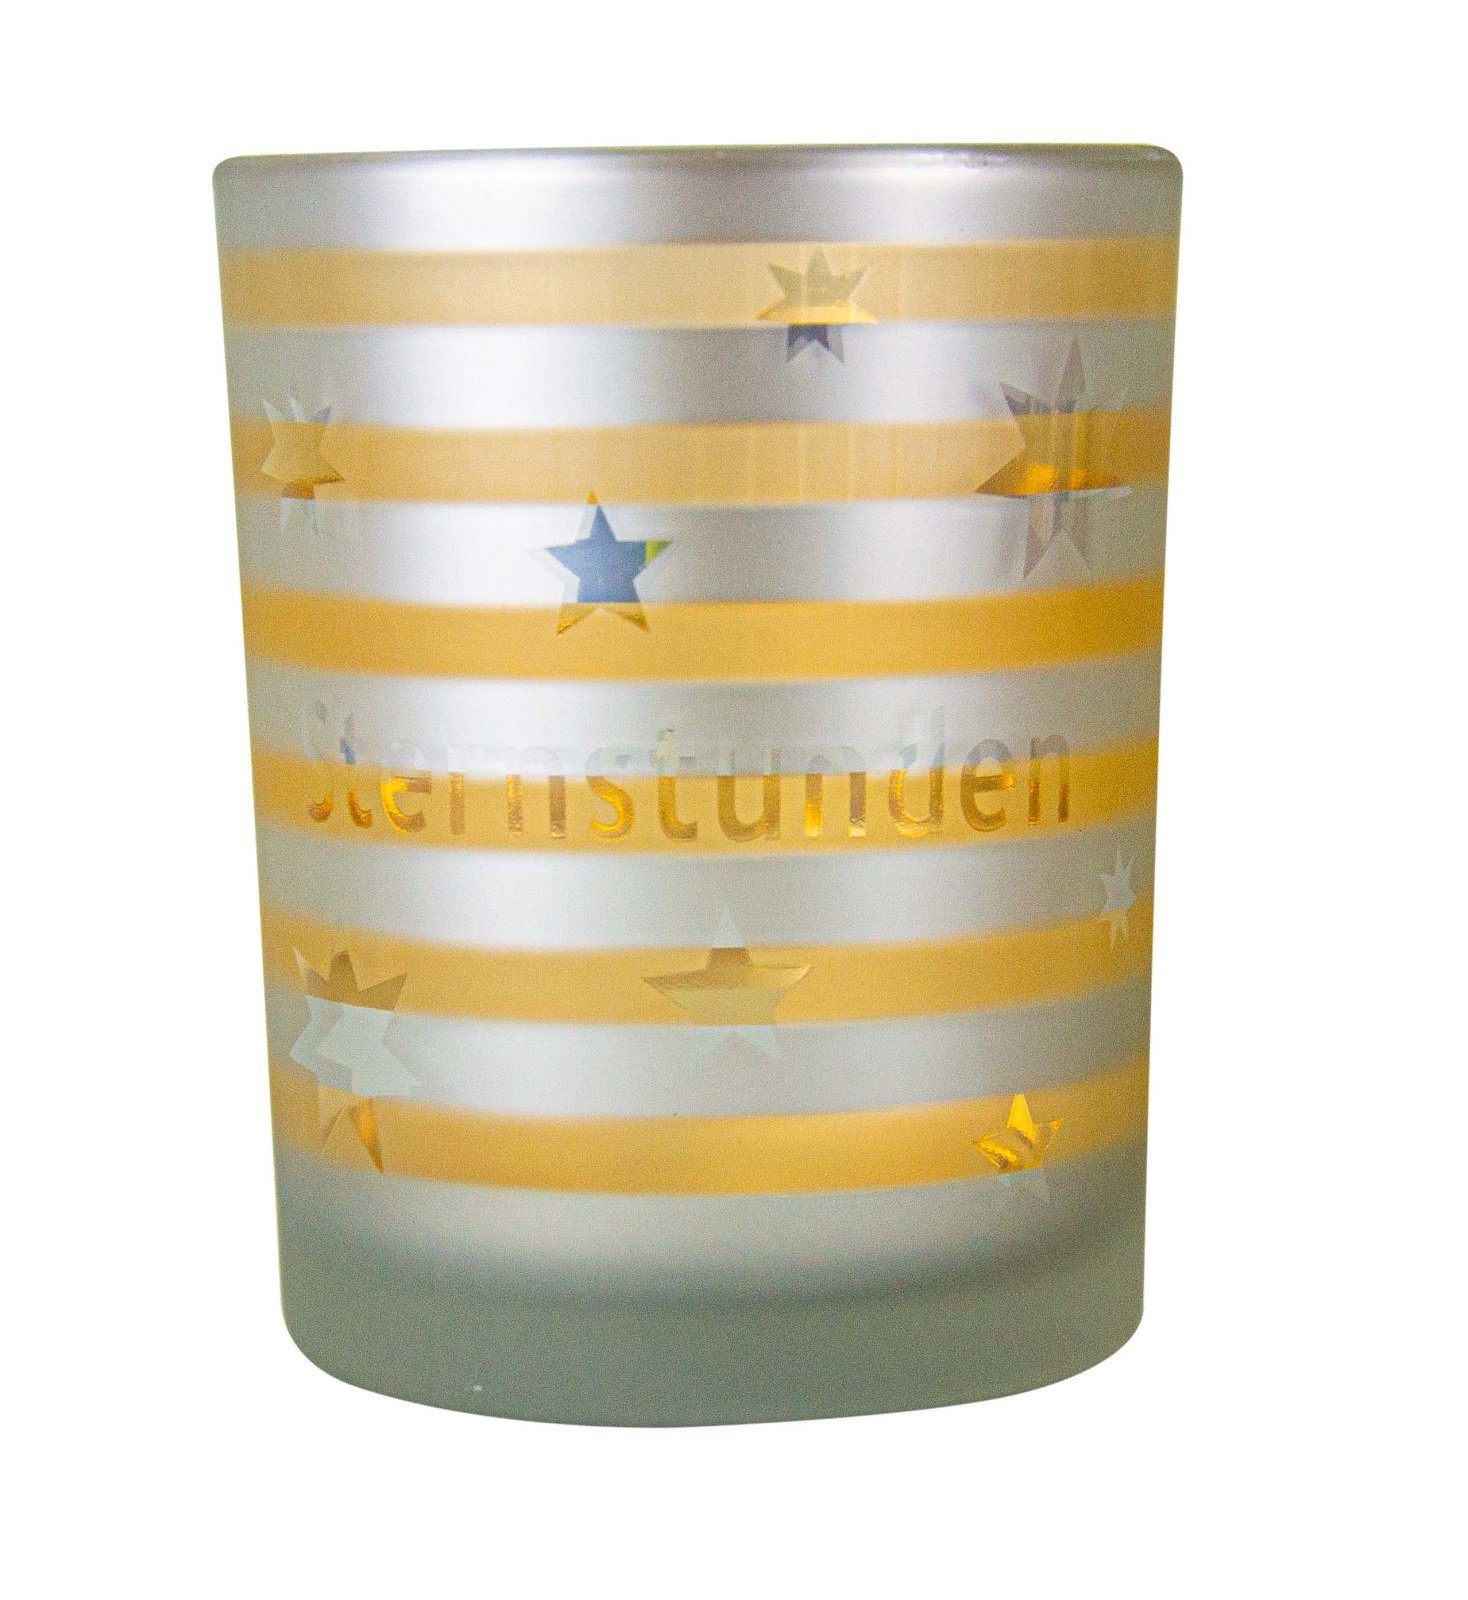 Parts4Living Windlicht Glas Teelichthalter mit Sternen Teelichtglas Kerzenhalter mit winterlichem Charme weiß gold 10x12,5 cm, im romantischen Stil